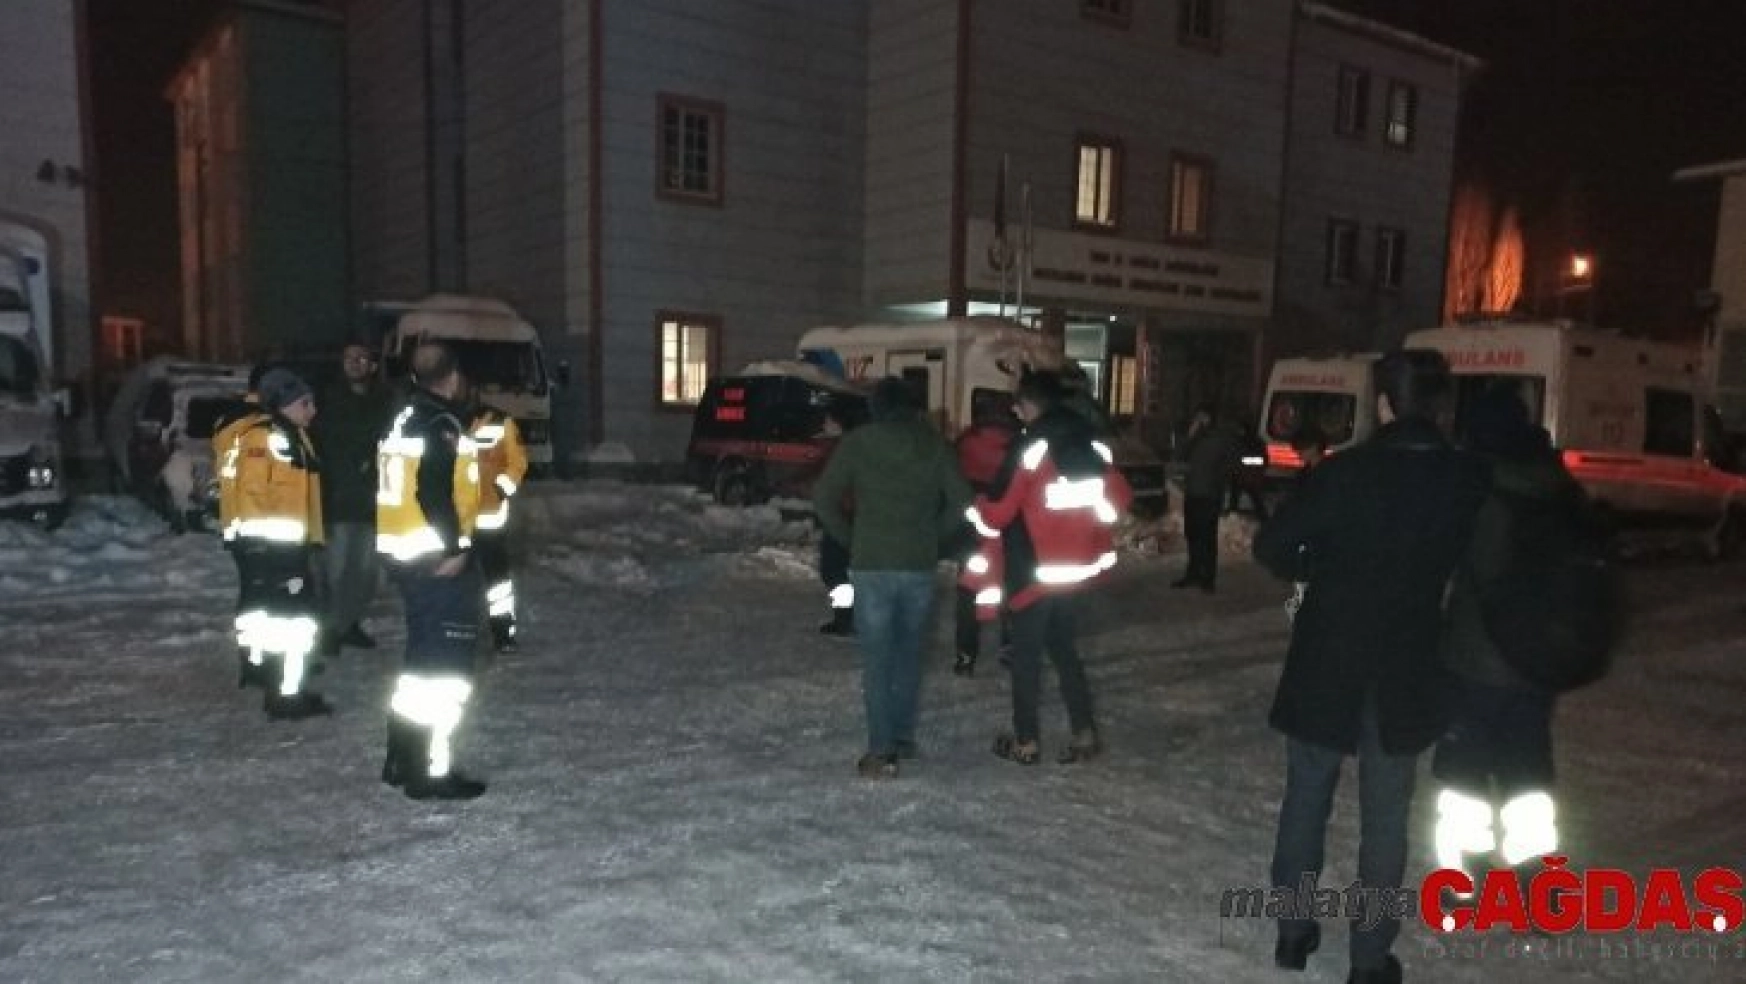 Van'dan 32 kişilik sağlık ekibi Elazığ'a gitti